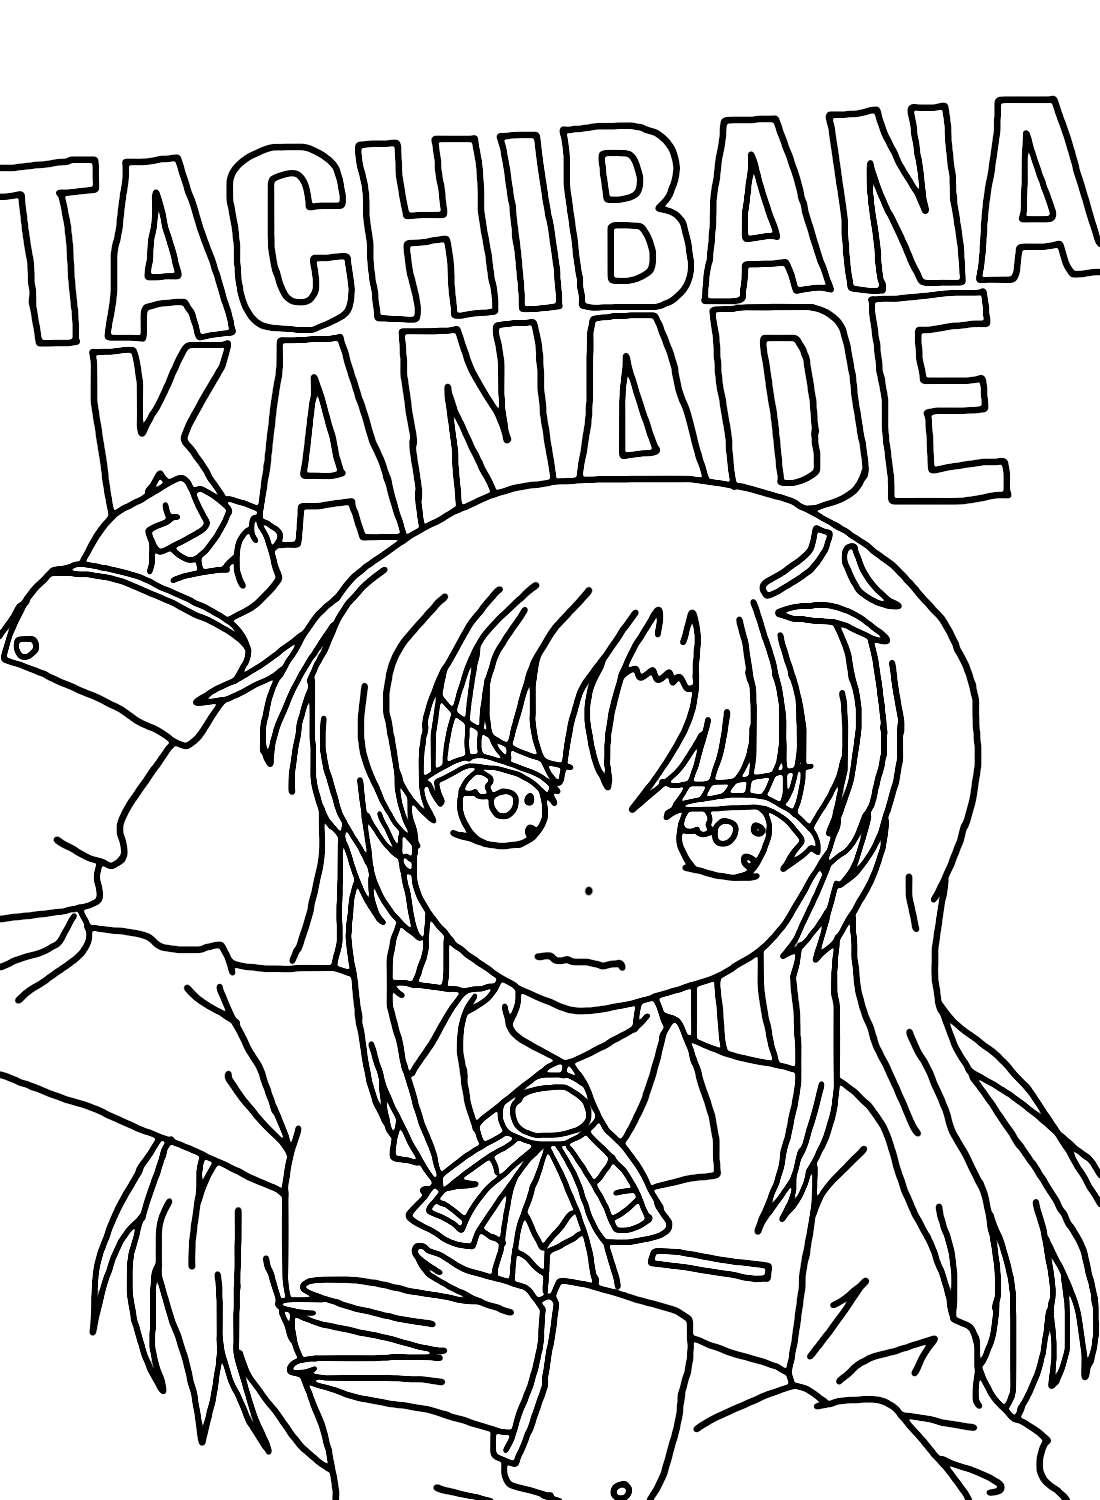 Tachibana Kanade kleurplaat van Kanade Tachibana